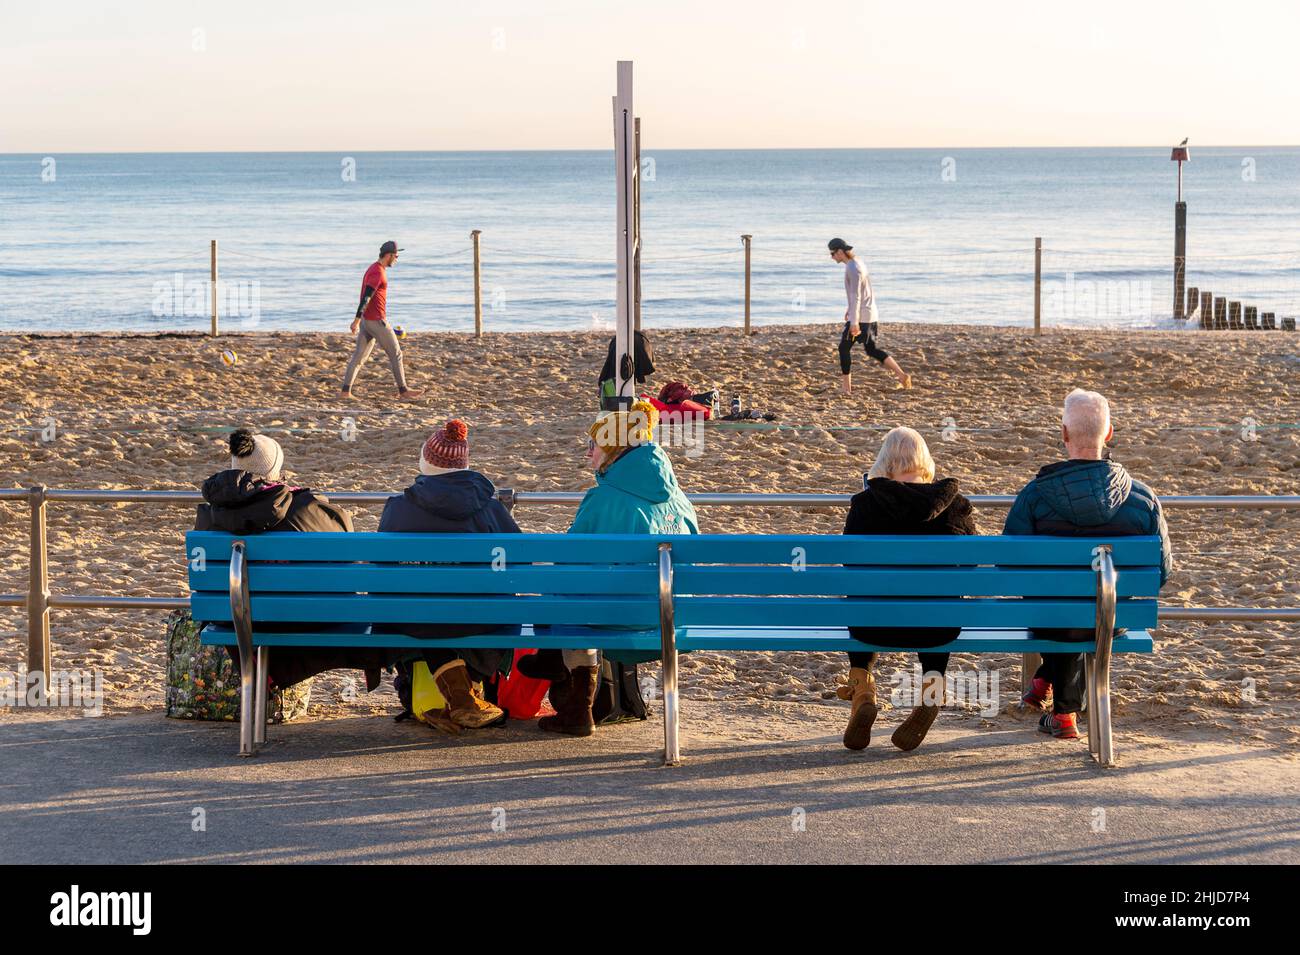 Menschen, die auf einer Bank sitzen und ein Strandvolleyball-Spiel beobachten Stockfoto